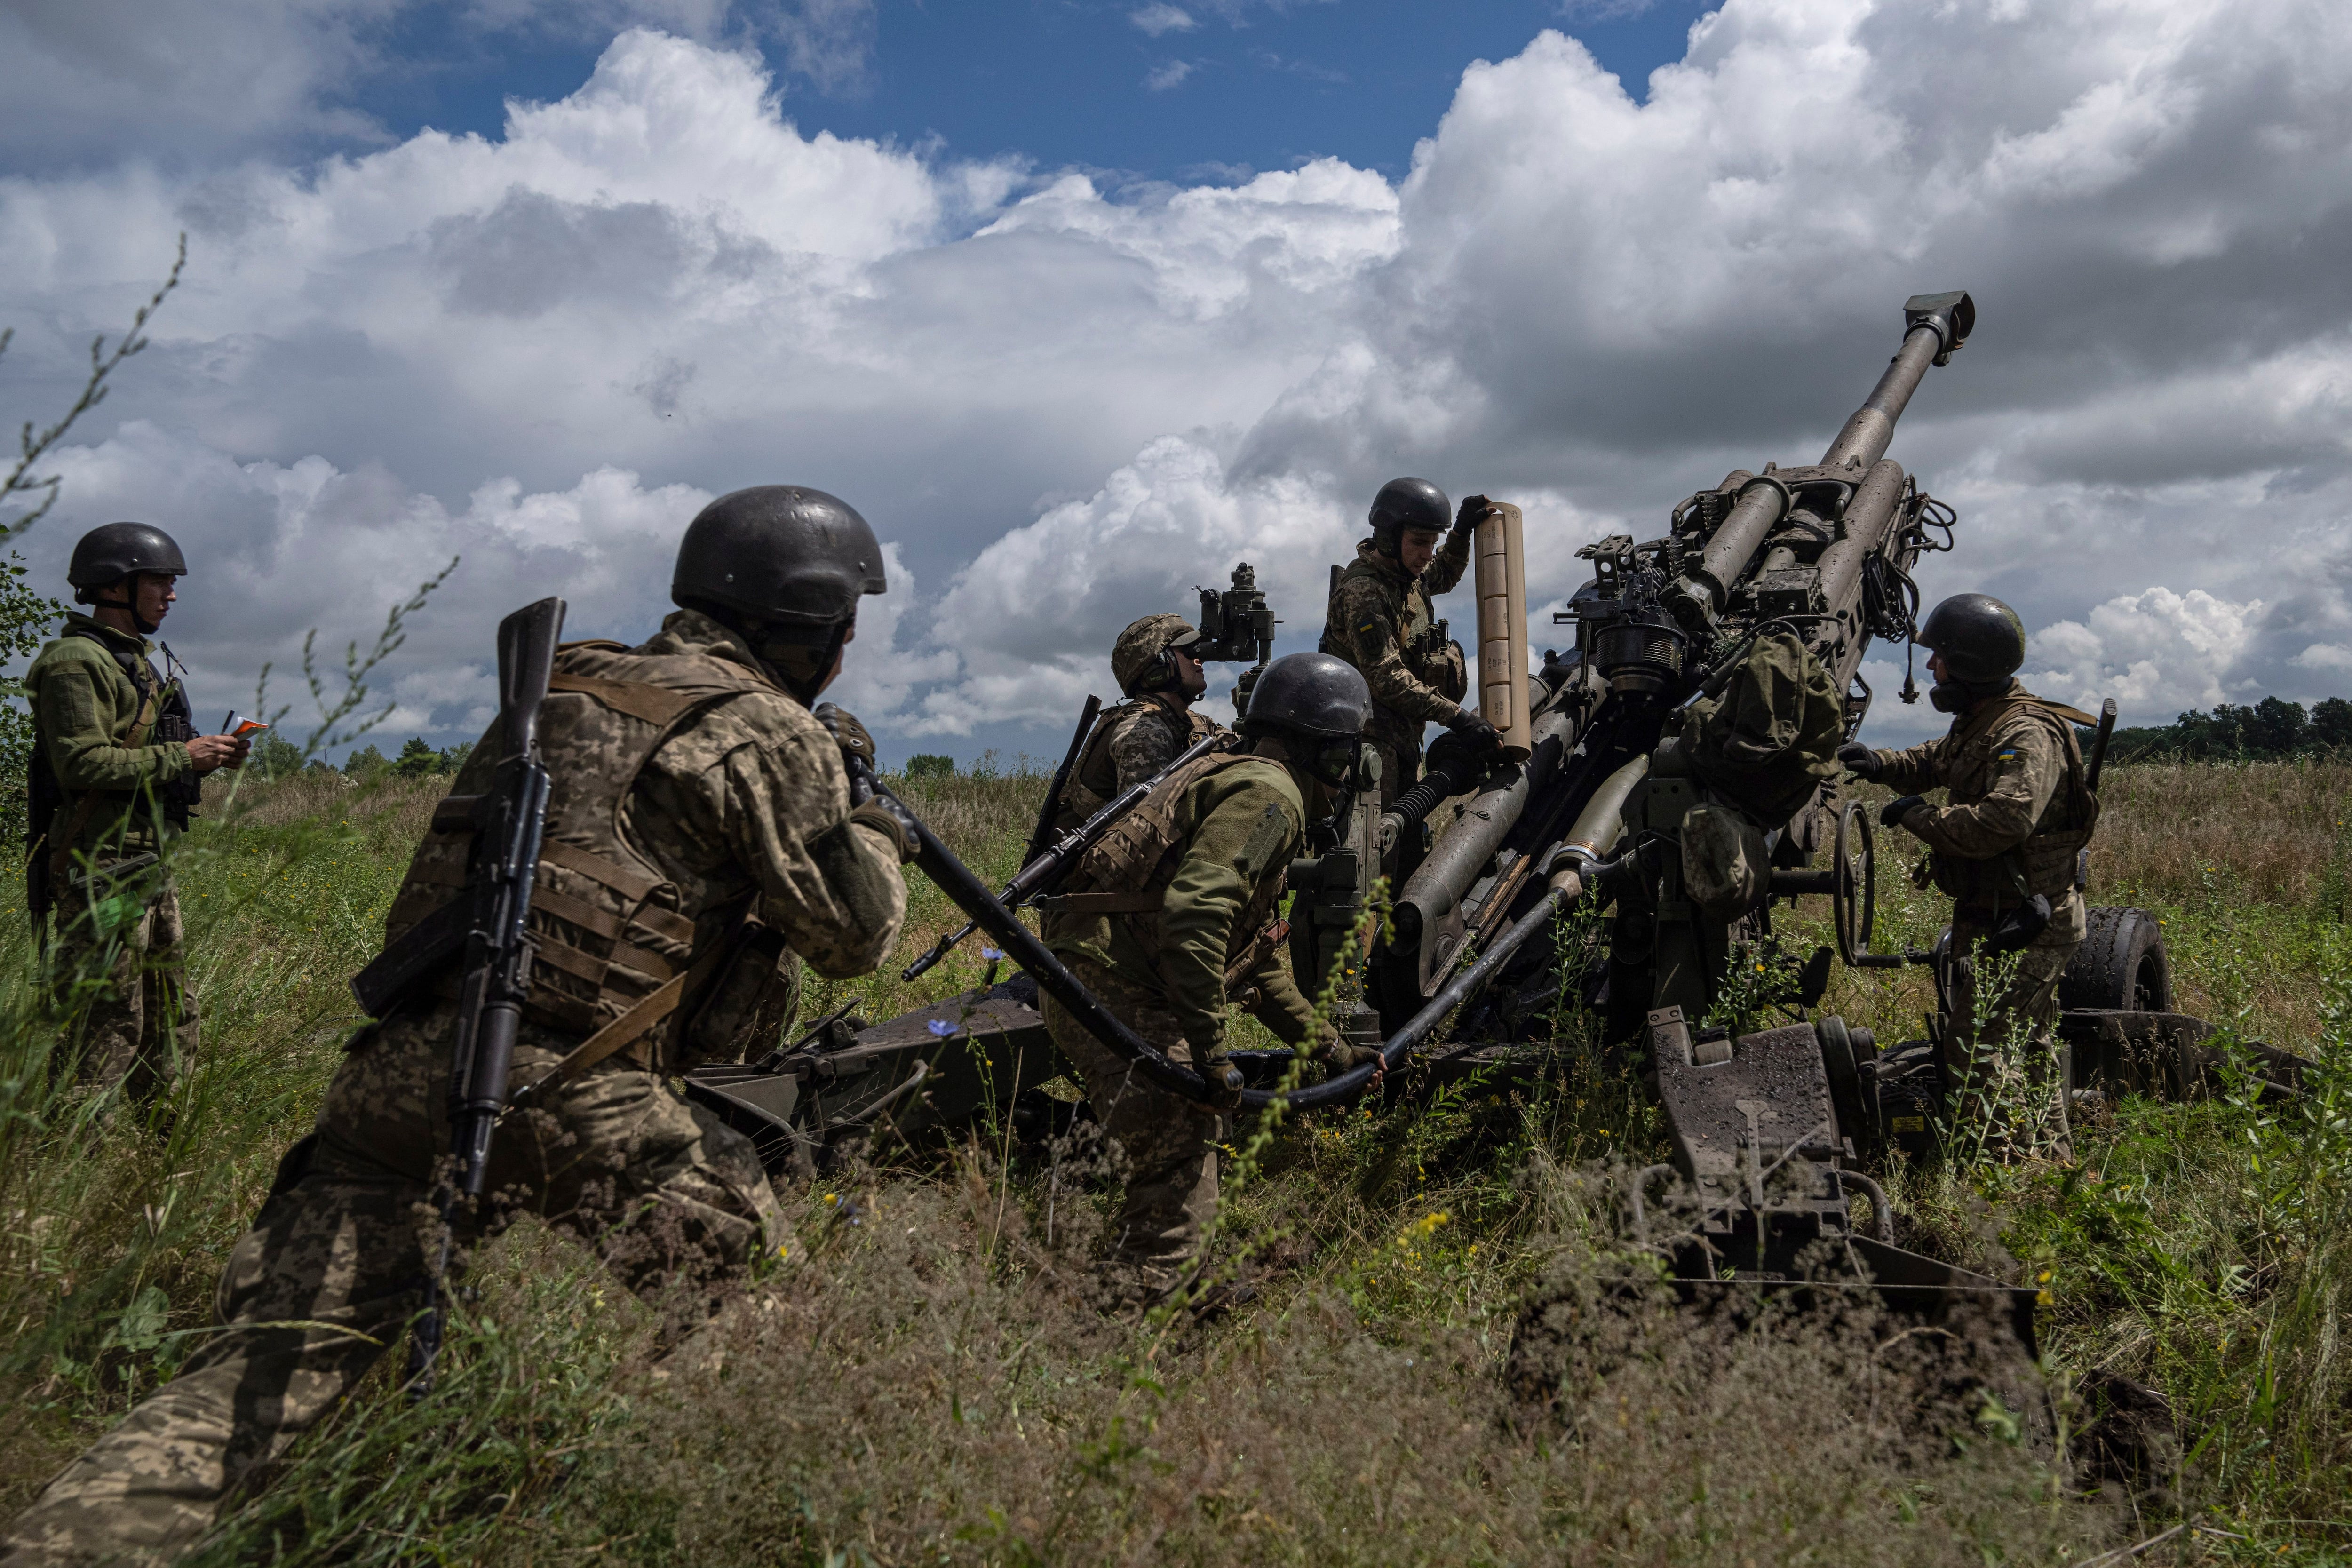 ARCHIVO - Soldados ucranianos se preparan para dispararles a posiciones rusas con un cañón M777 suministrado por Estados Unidos, el 14 de julio de 2022, en la región de Járkiv, Ucrania. (AP Foto/Evgeniy Maloletka, archivo)